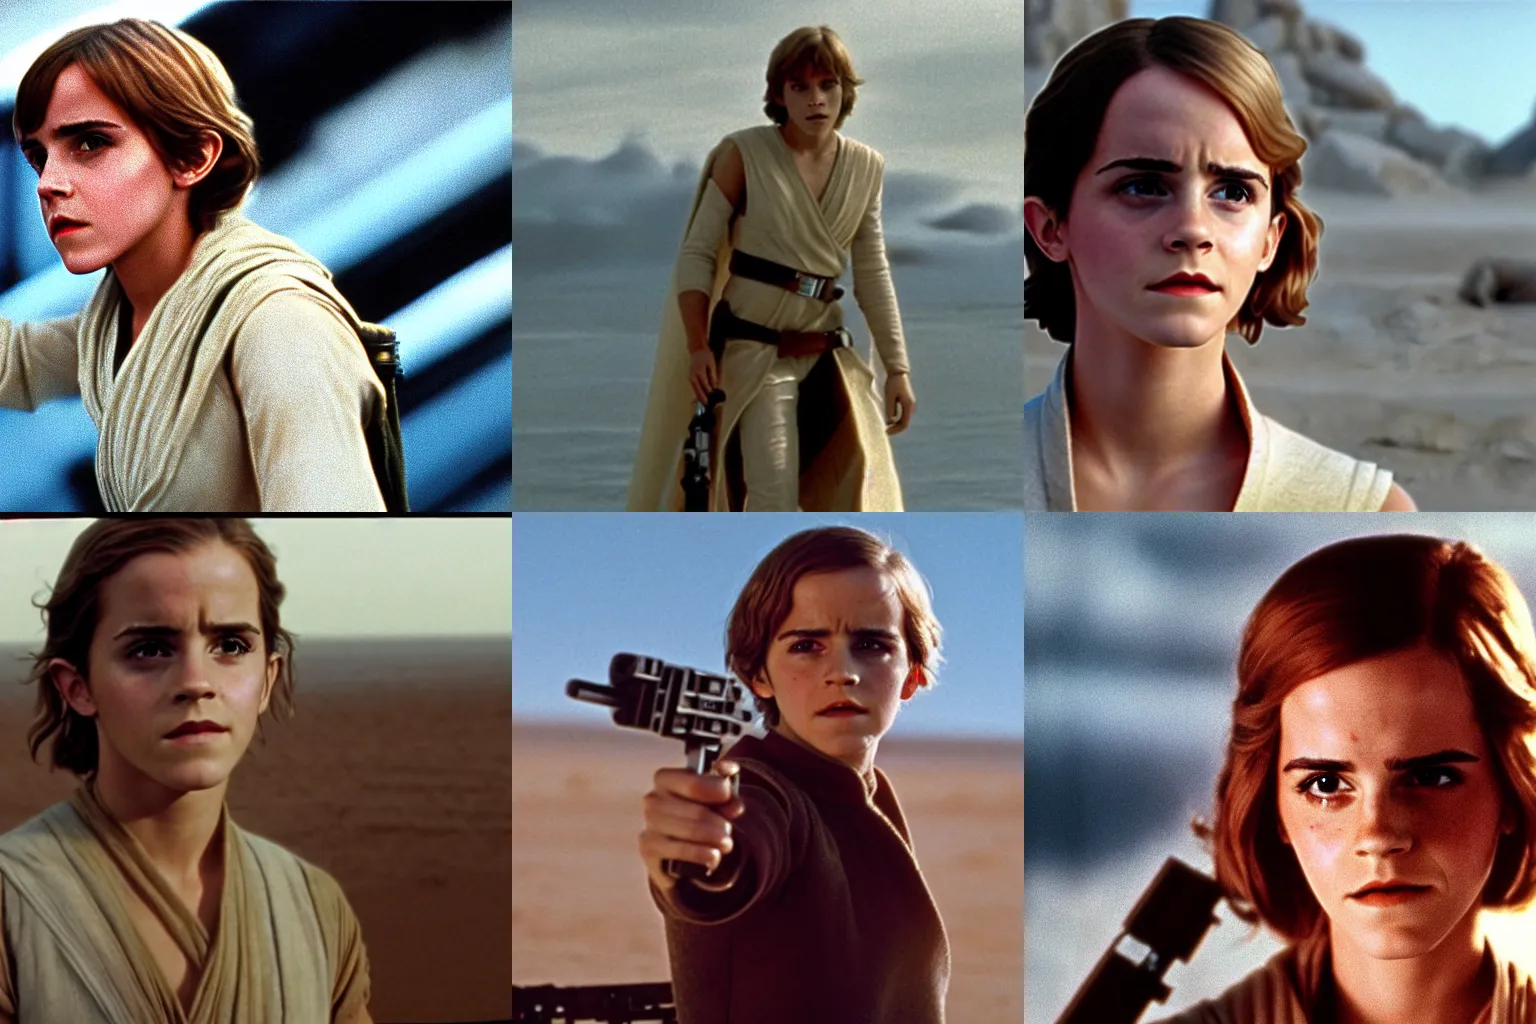 Prompt: Film still of Emma Watson as Luke Skywalker in Star Wars (1977)